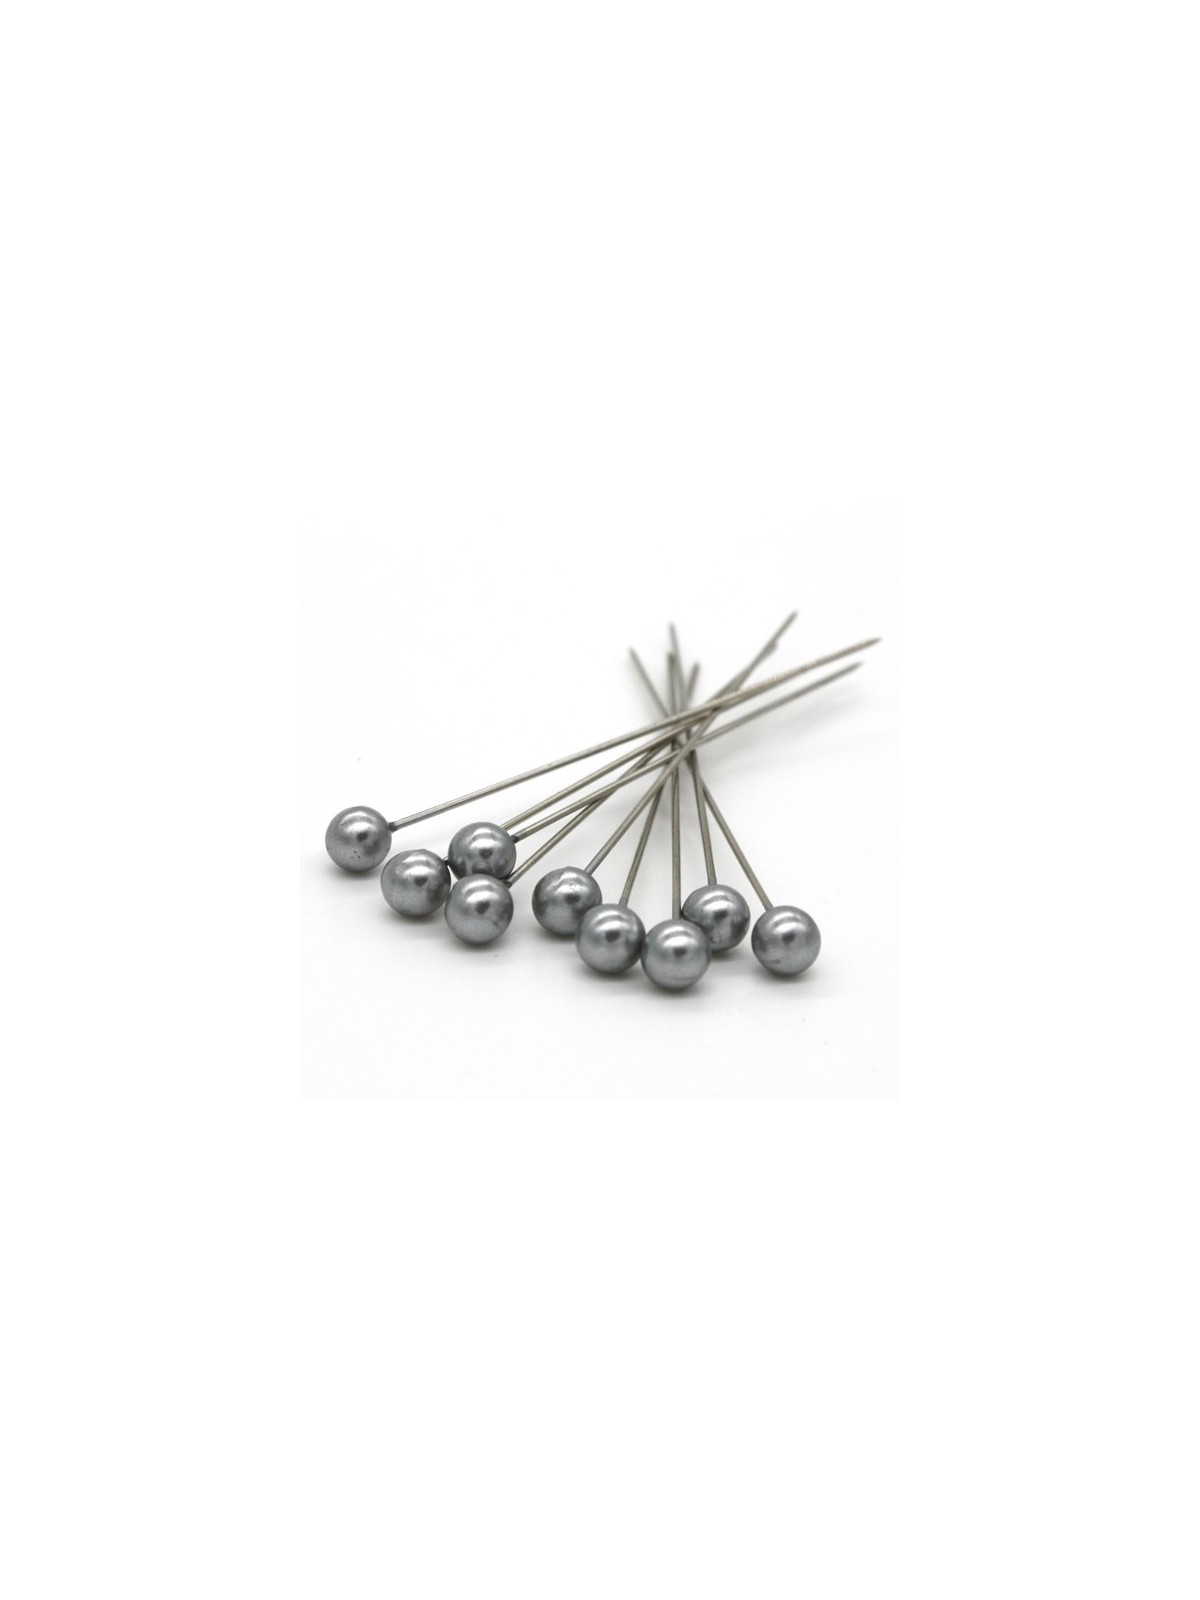 Dekoračné špendlíky - strieborná perla - 65mm/9ks